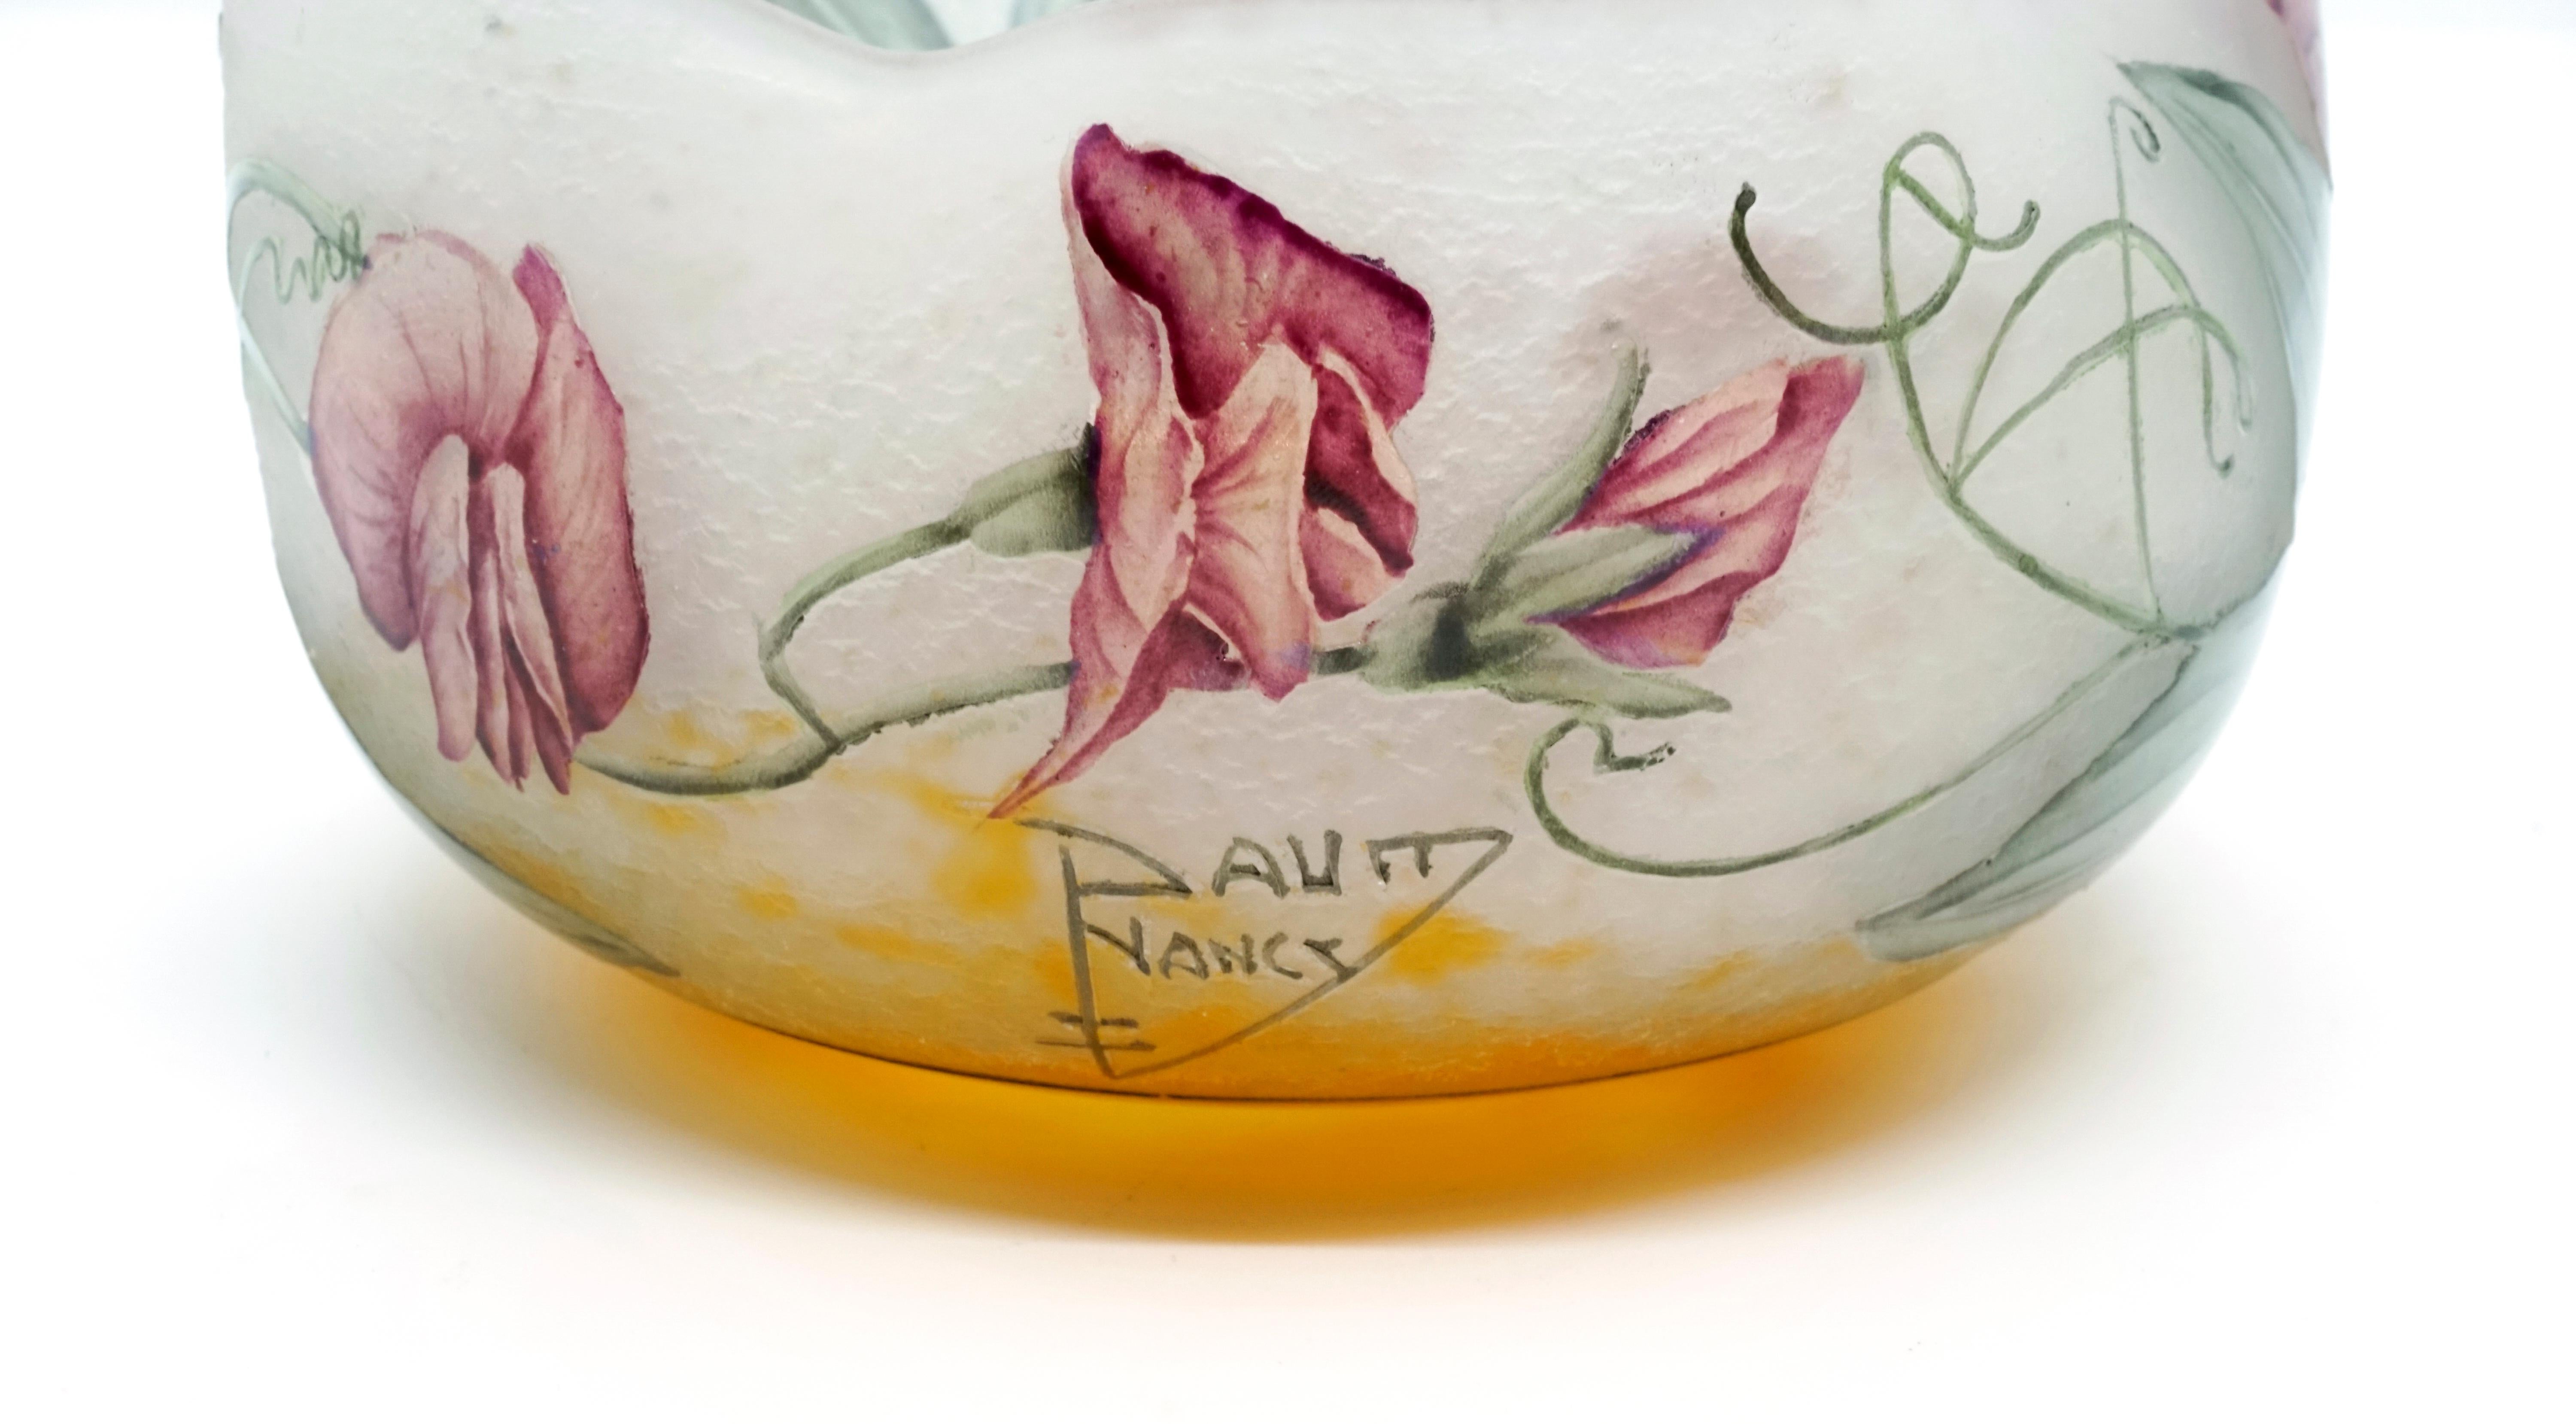 French Art Nouveau Flower Bowl with Sweet Pea Decor, Daum Nancy, France, 1900-1905